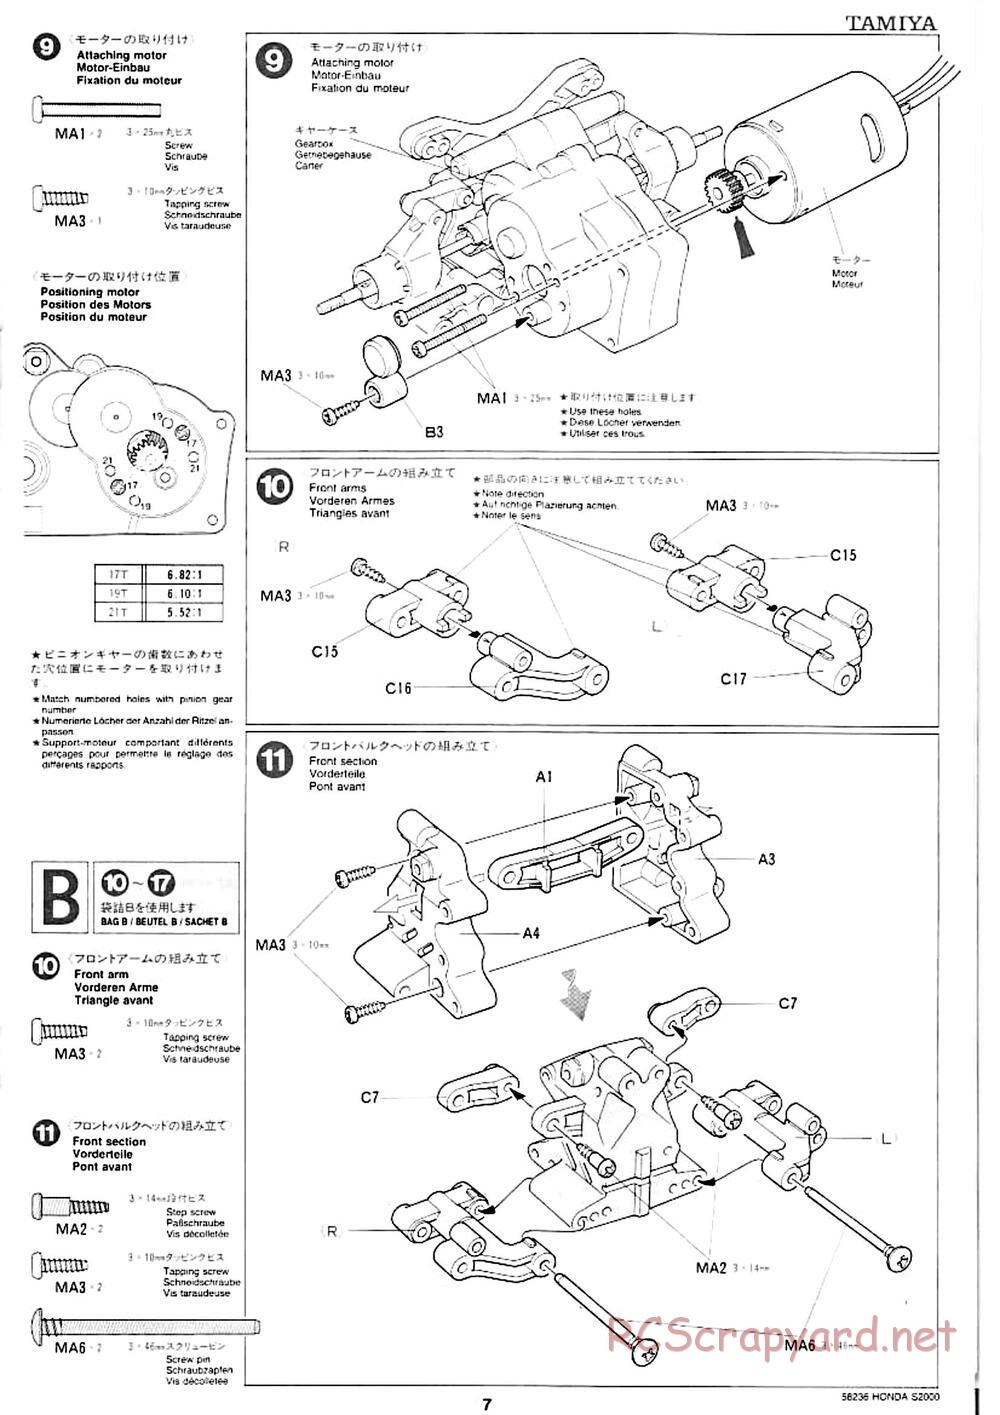 Tamiya - Honda S2000 - M04L Chassis - Manual - Page 5